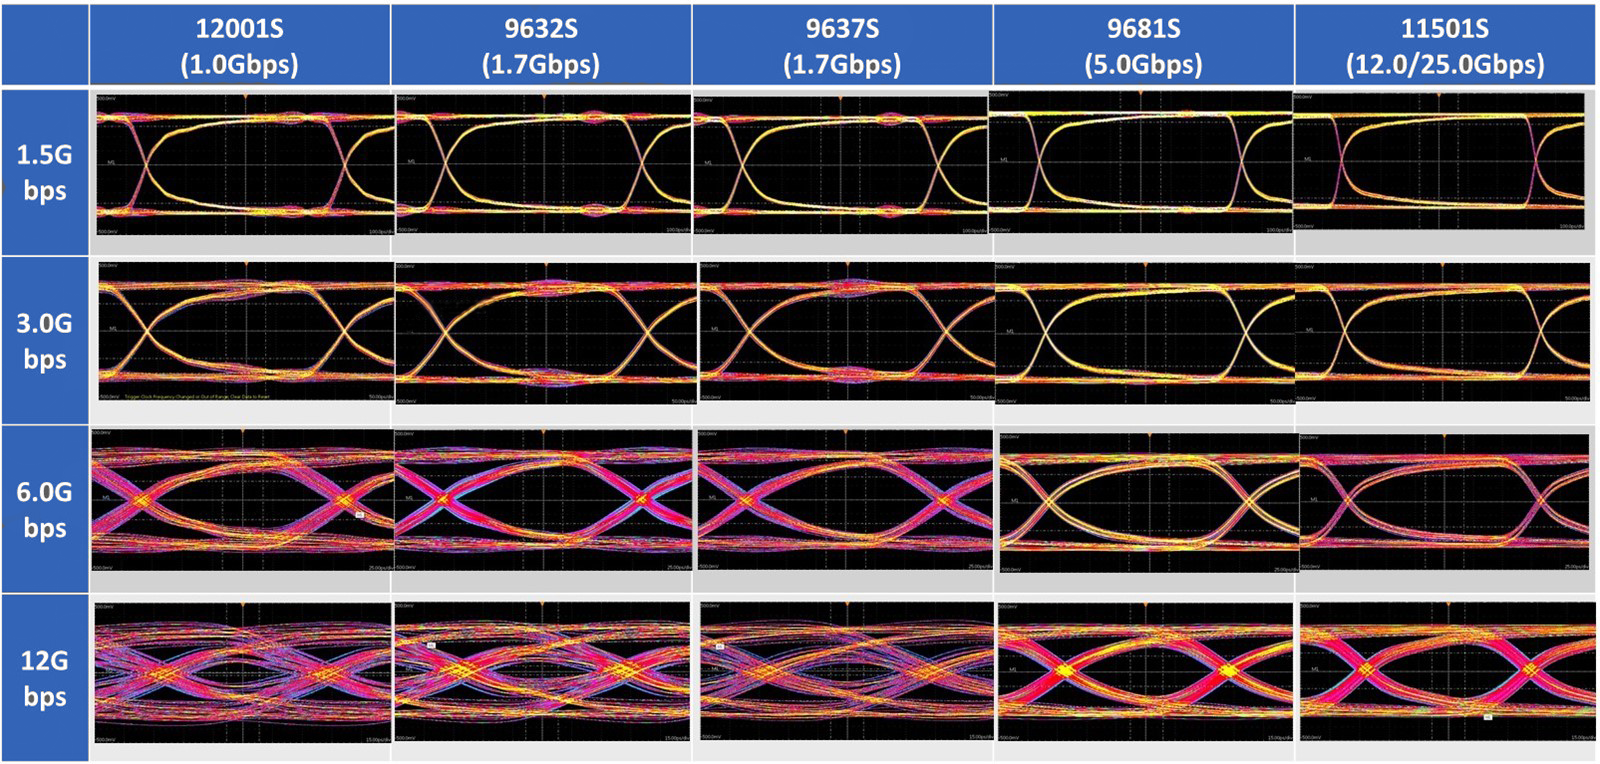 12Gbpsまでのアイパターン観測時の参考波形